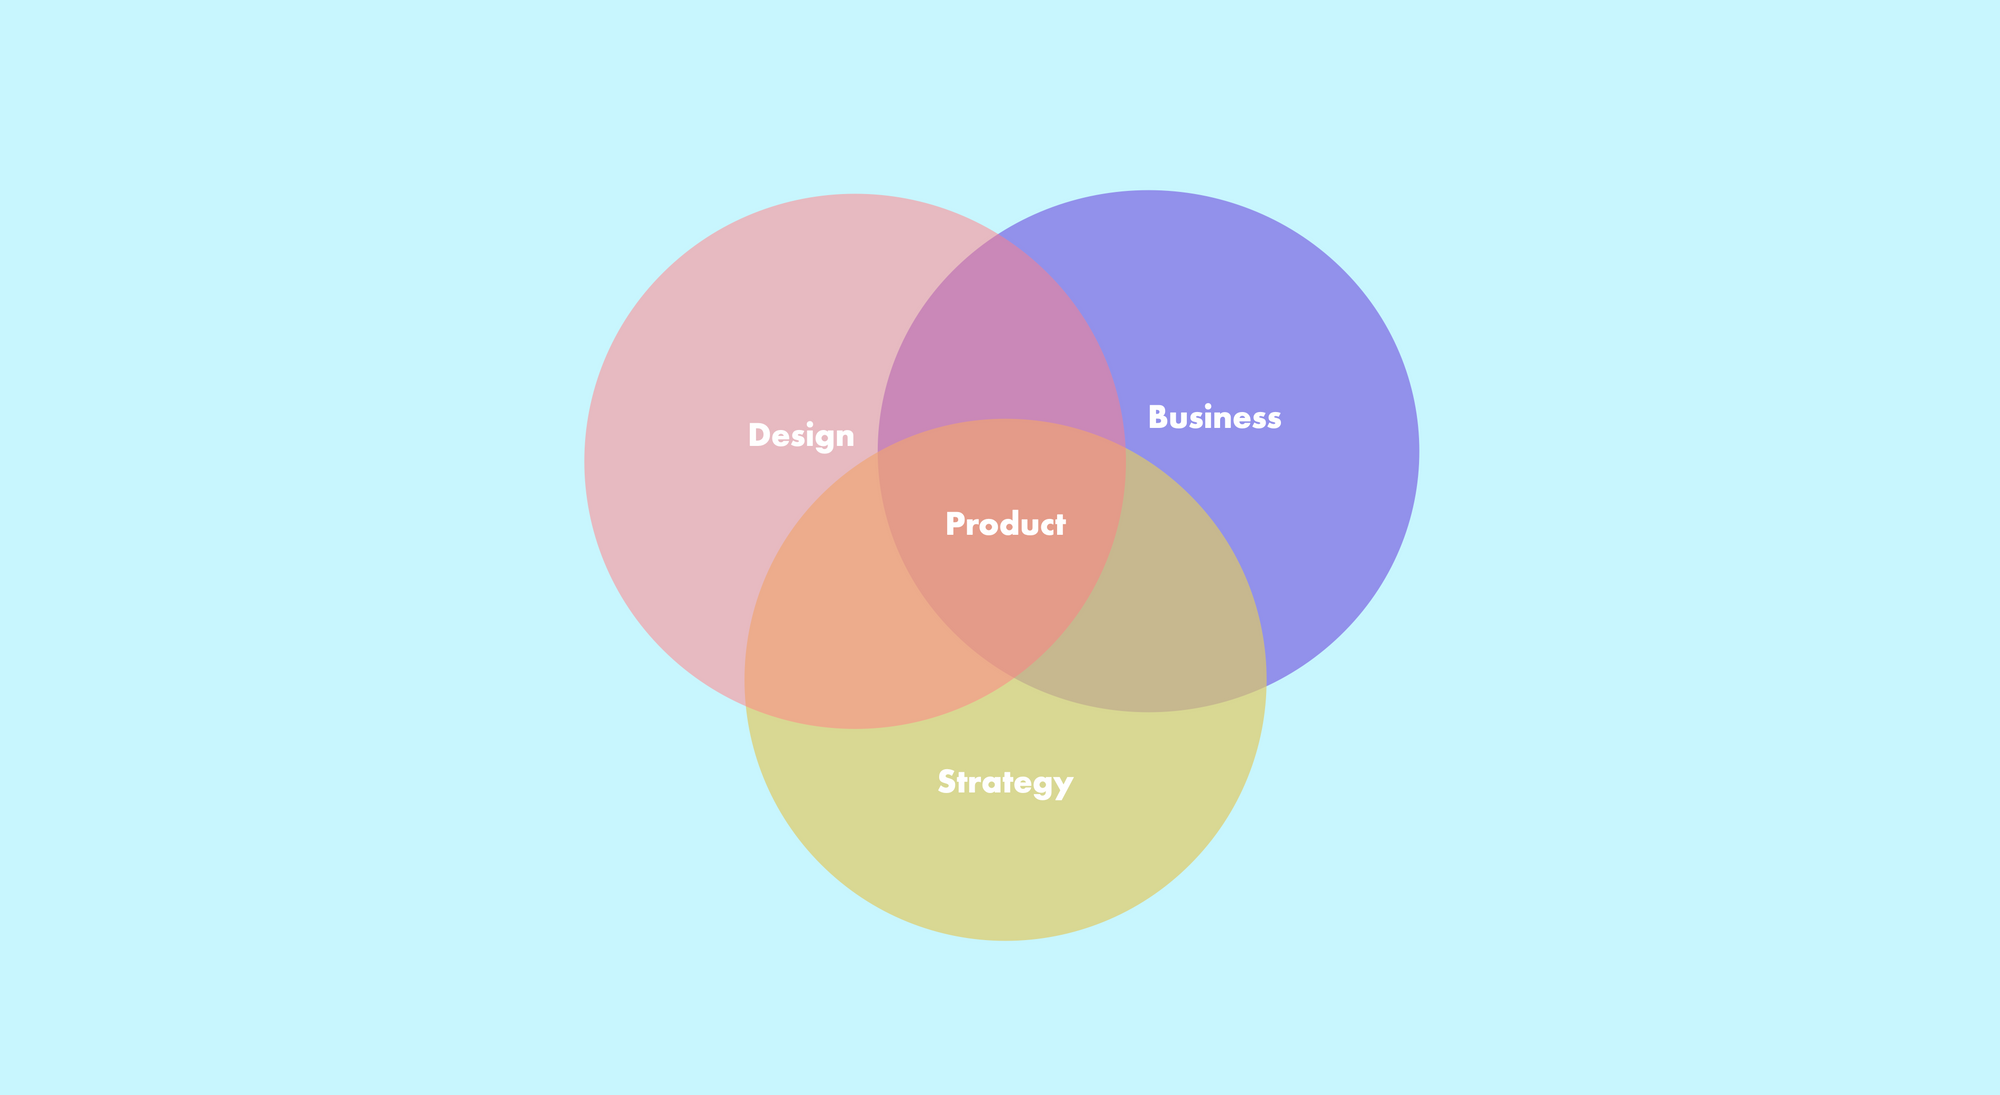 Диаграмма Венна - оранжевый (дизайн), желтый (стратегия), фиолетовый (бизнес) навыки дизайна продукта